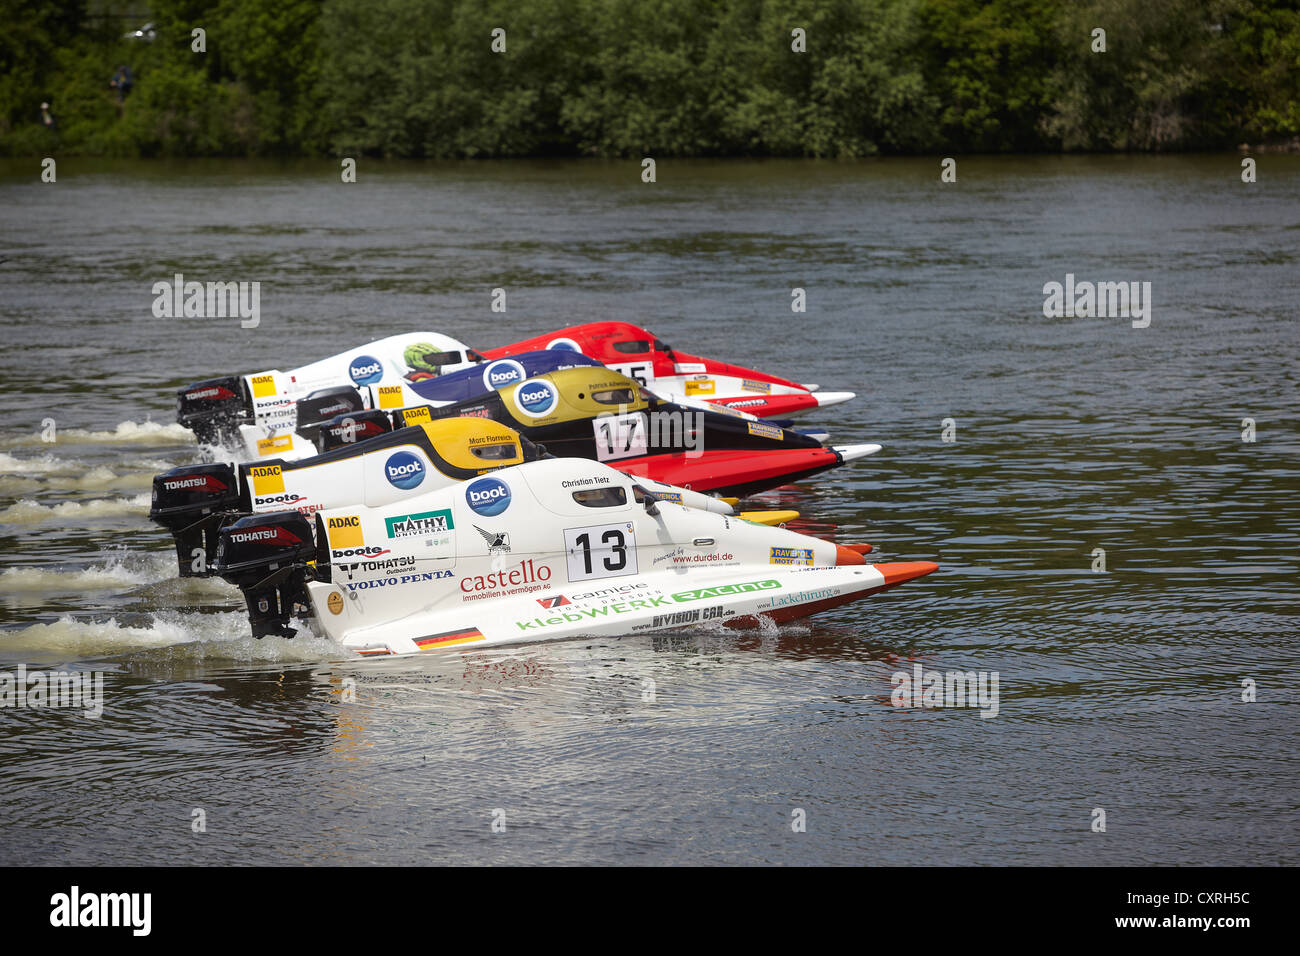 ADAC, le club automobile allemand, course de bateaux à moteur sur la rivière Moselle, 2012 Brodenbach, Rhénanie-Palatinat, Allemagne, Europe Banque D'Images